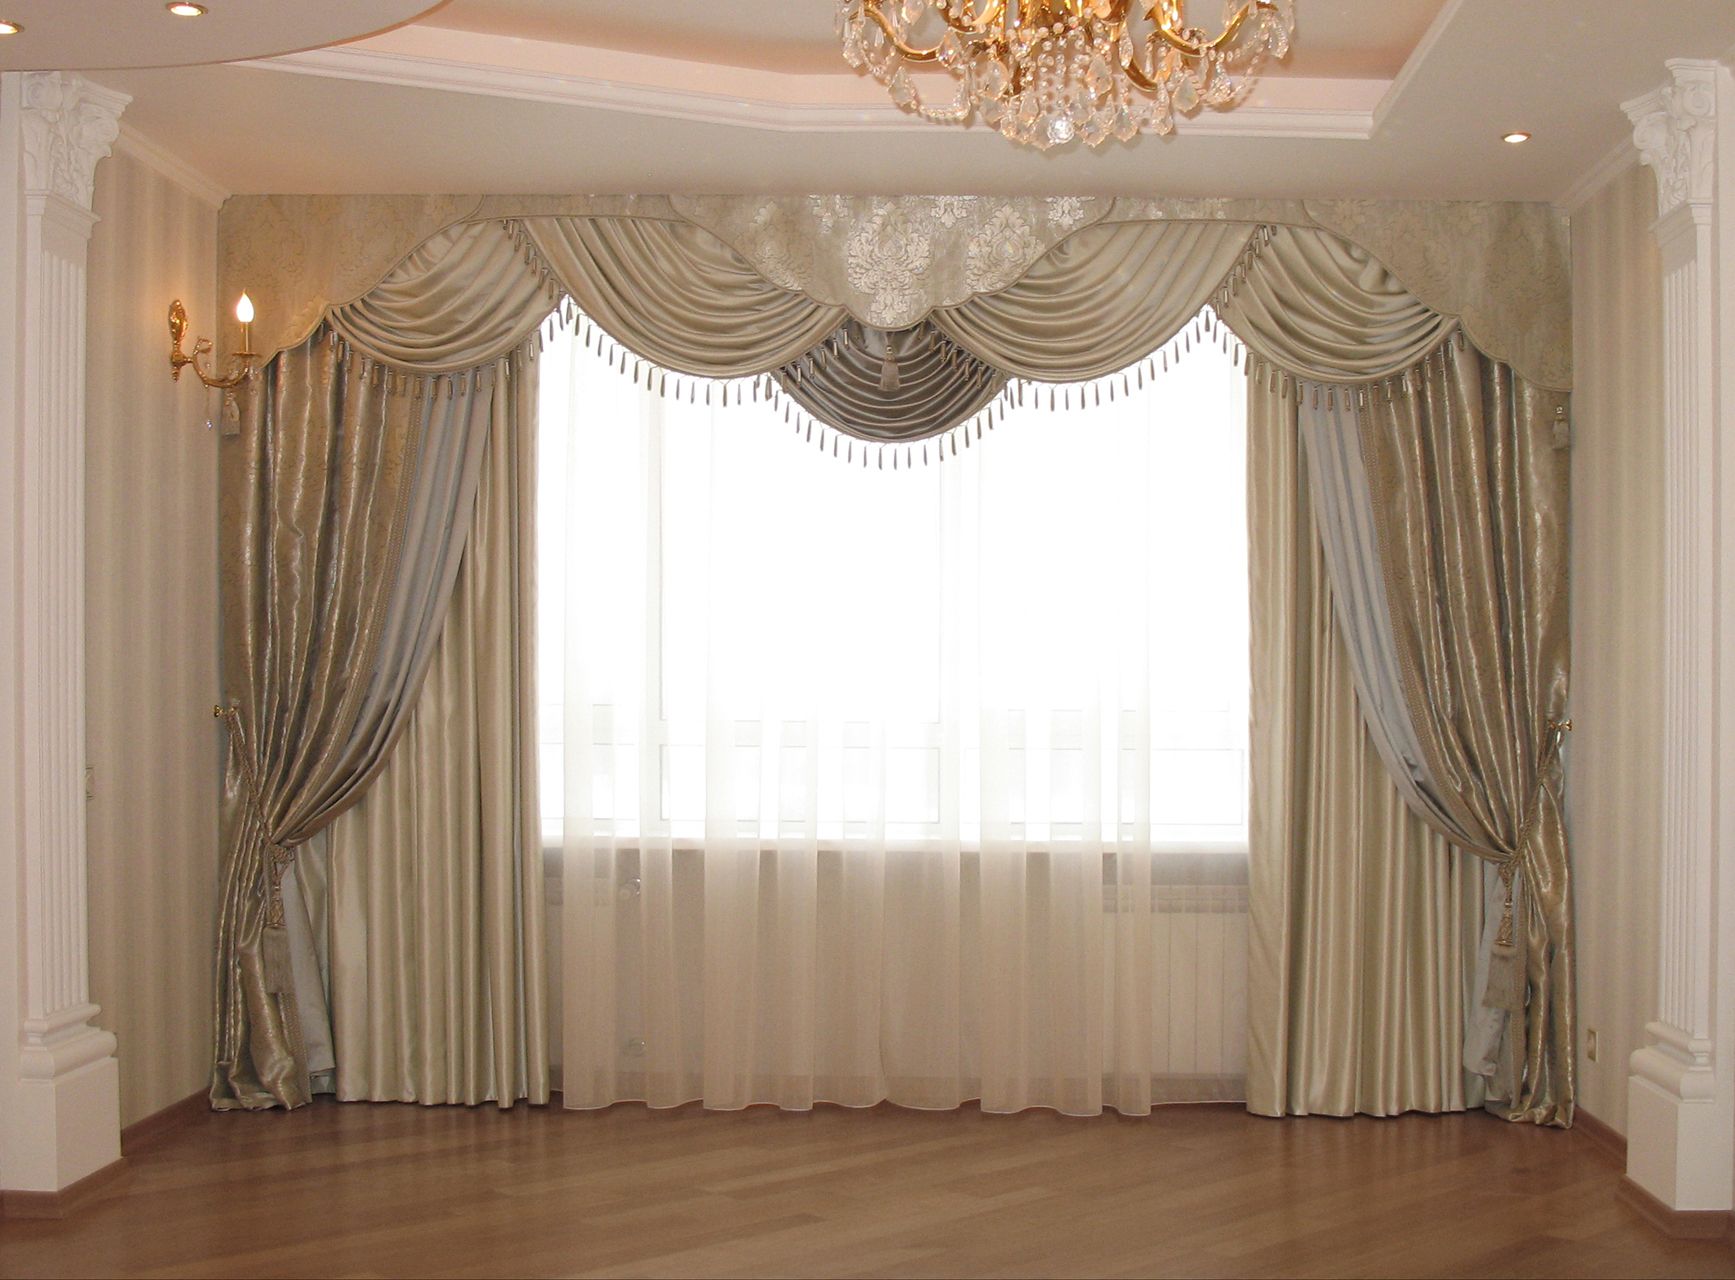 Дизайн оформления окна спальни в классическом стиле